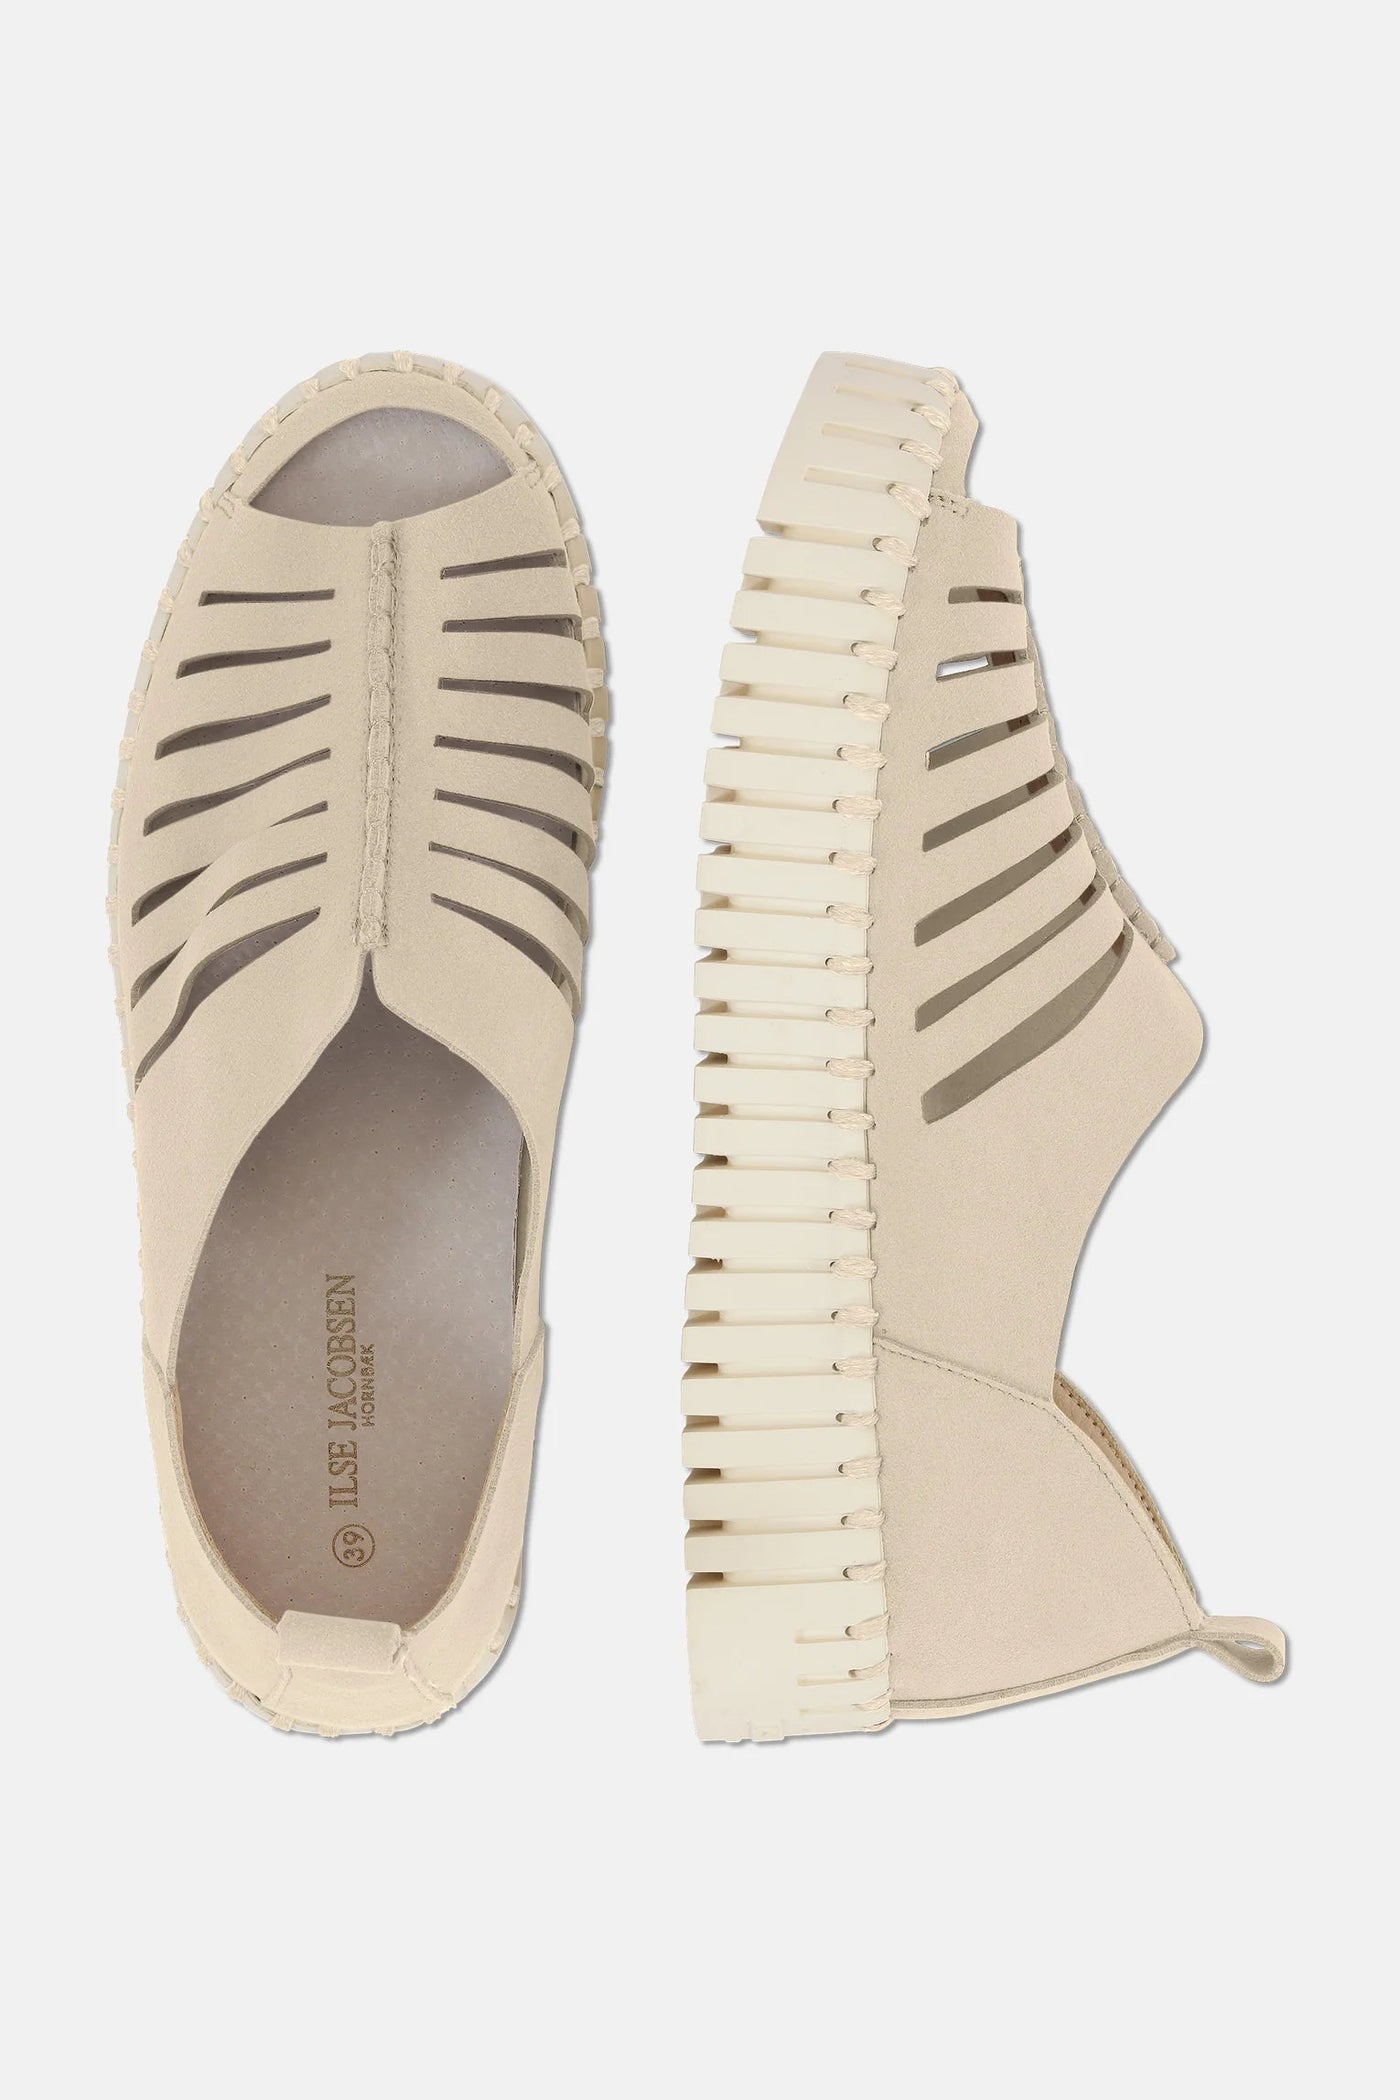 Ilse Jacobsen Platform Sandals - Kit-Accessories-Ohh! By Gum - Shop Sustainable